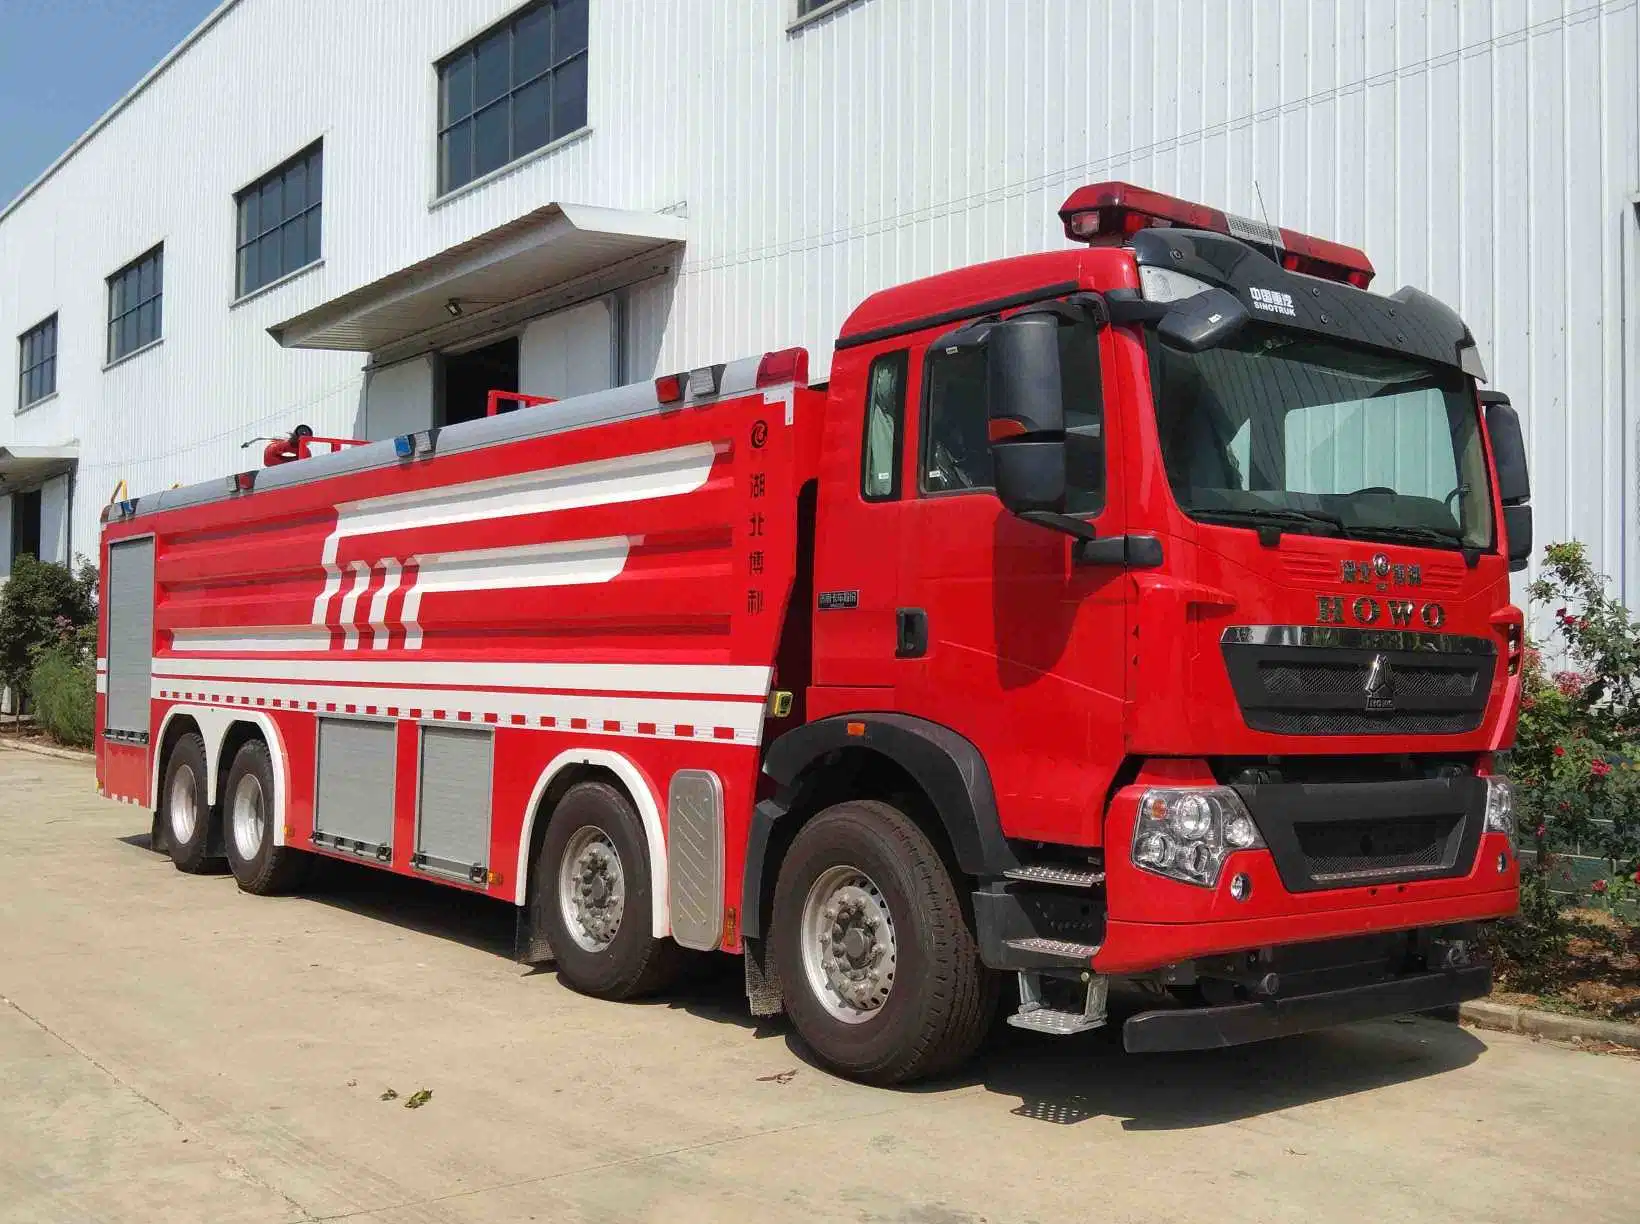 Mercedes-Benz Heavy Duty 25000L Water and Foam Tank Fire Truck HOWO Fire Fighting Truck